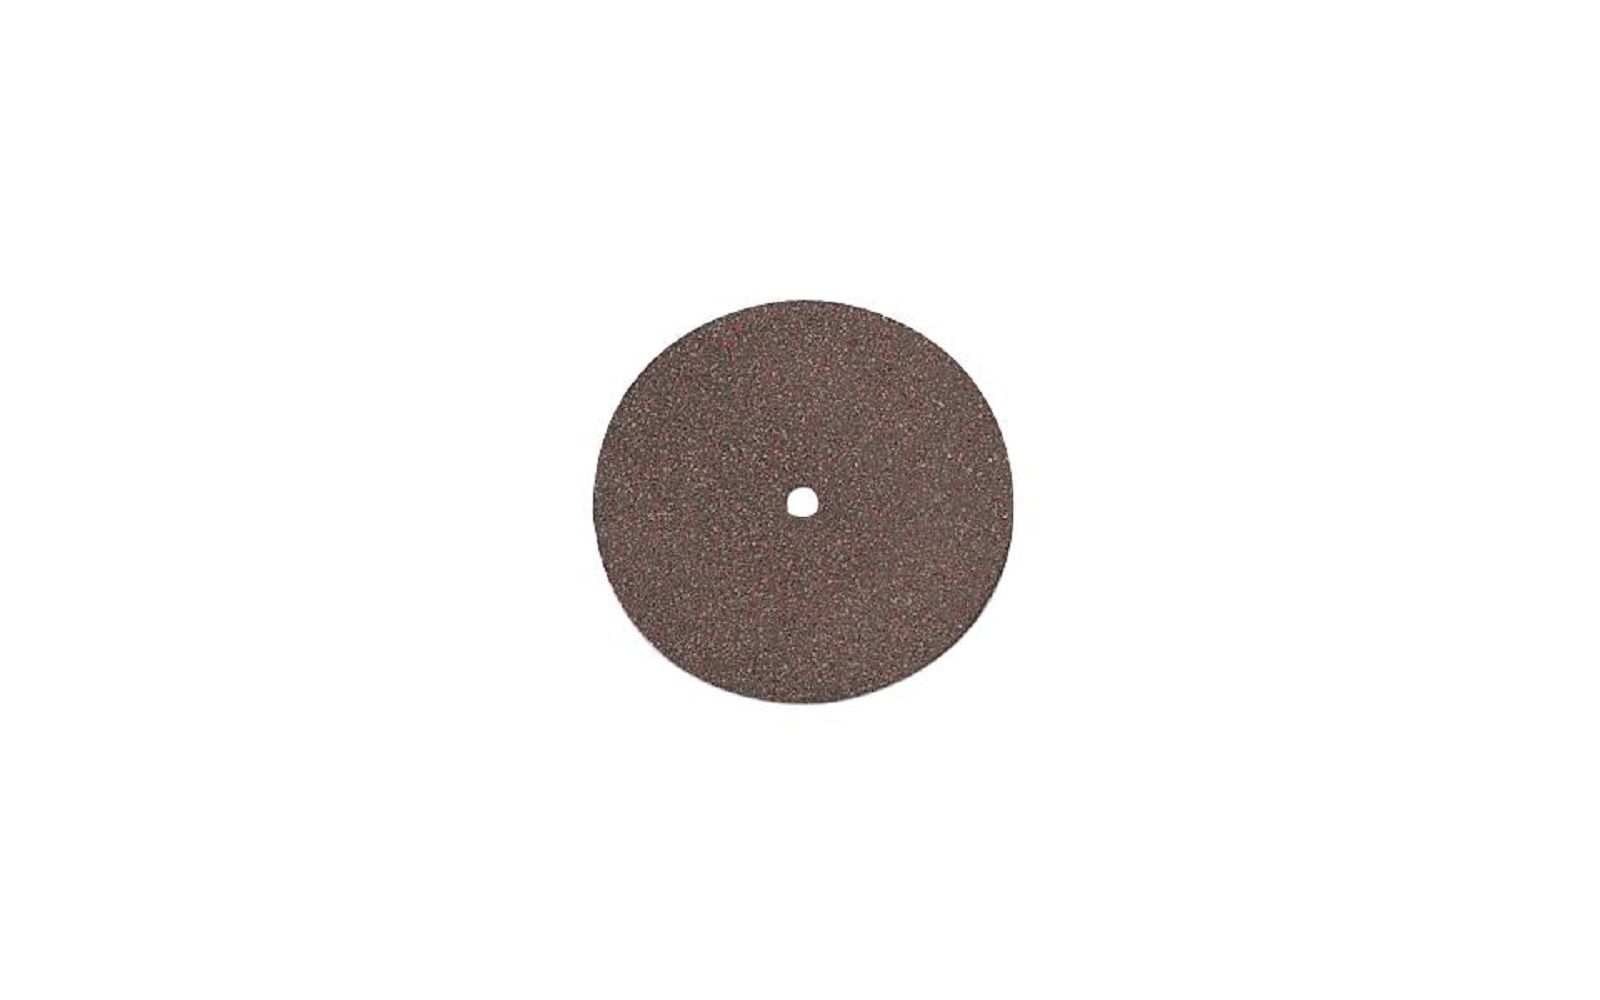 Red flash aluminum oxide separating discs – 100/box